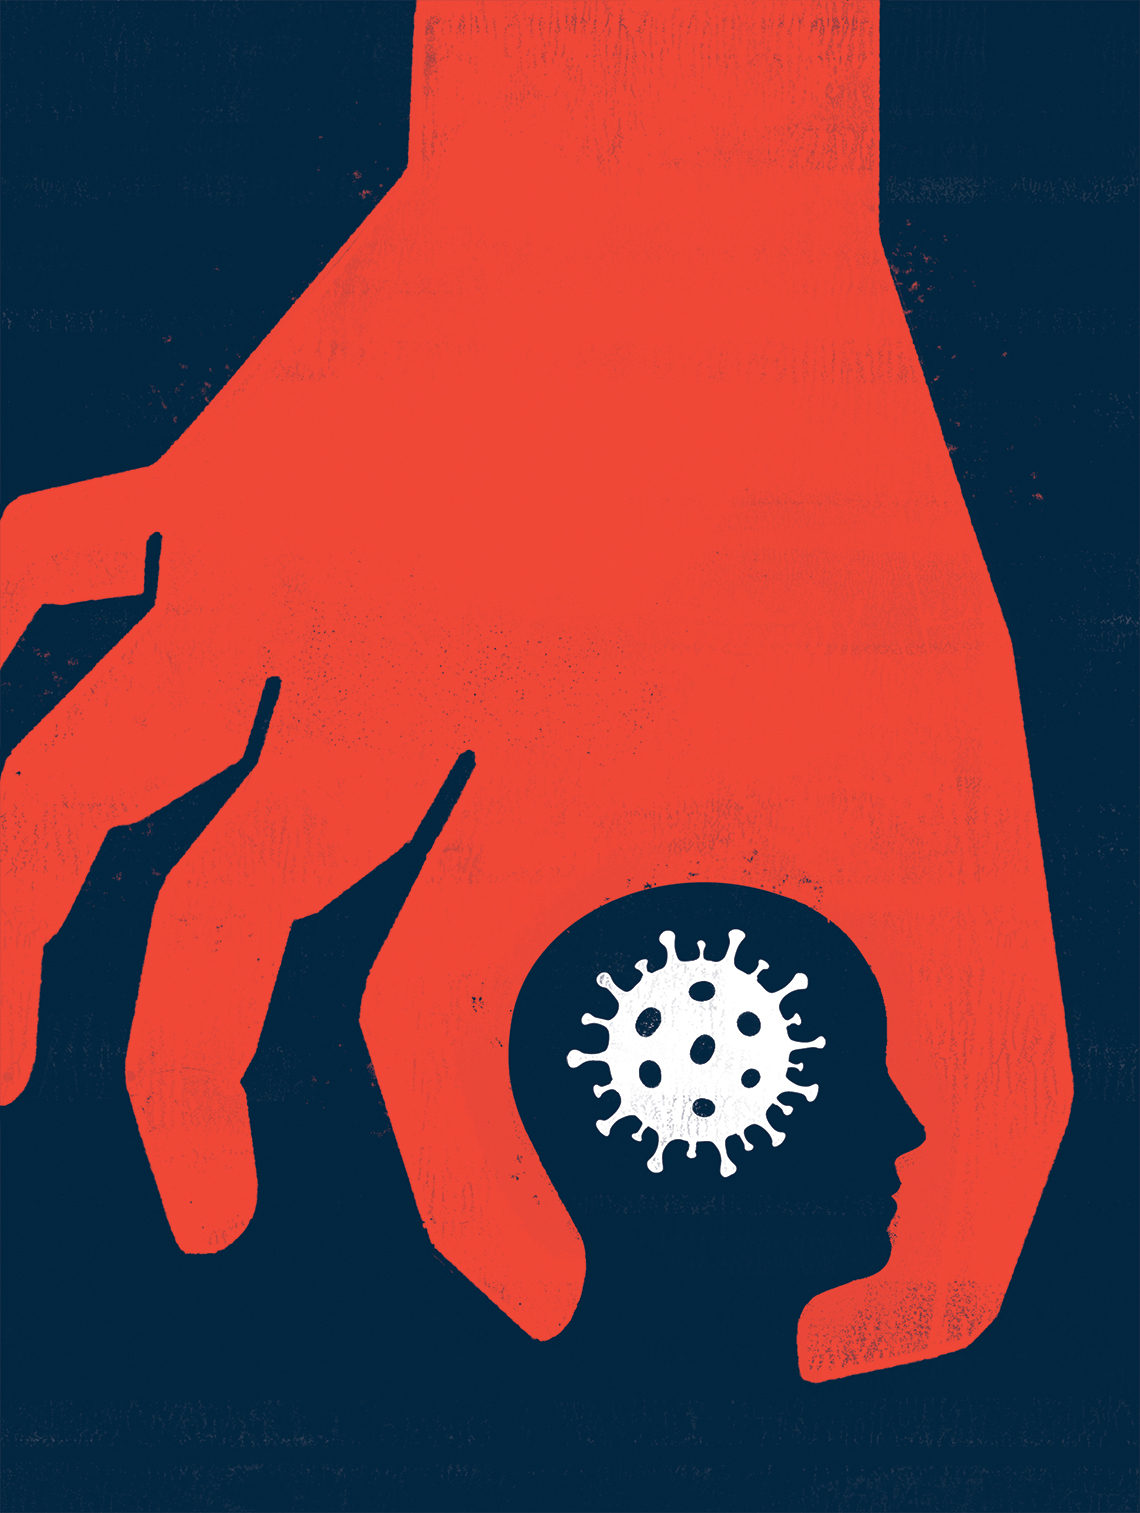 Gráfica del coronavirus con una mano alrededor de ella y delineando la figura de la cabeza de un ser humano.